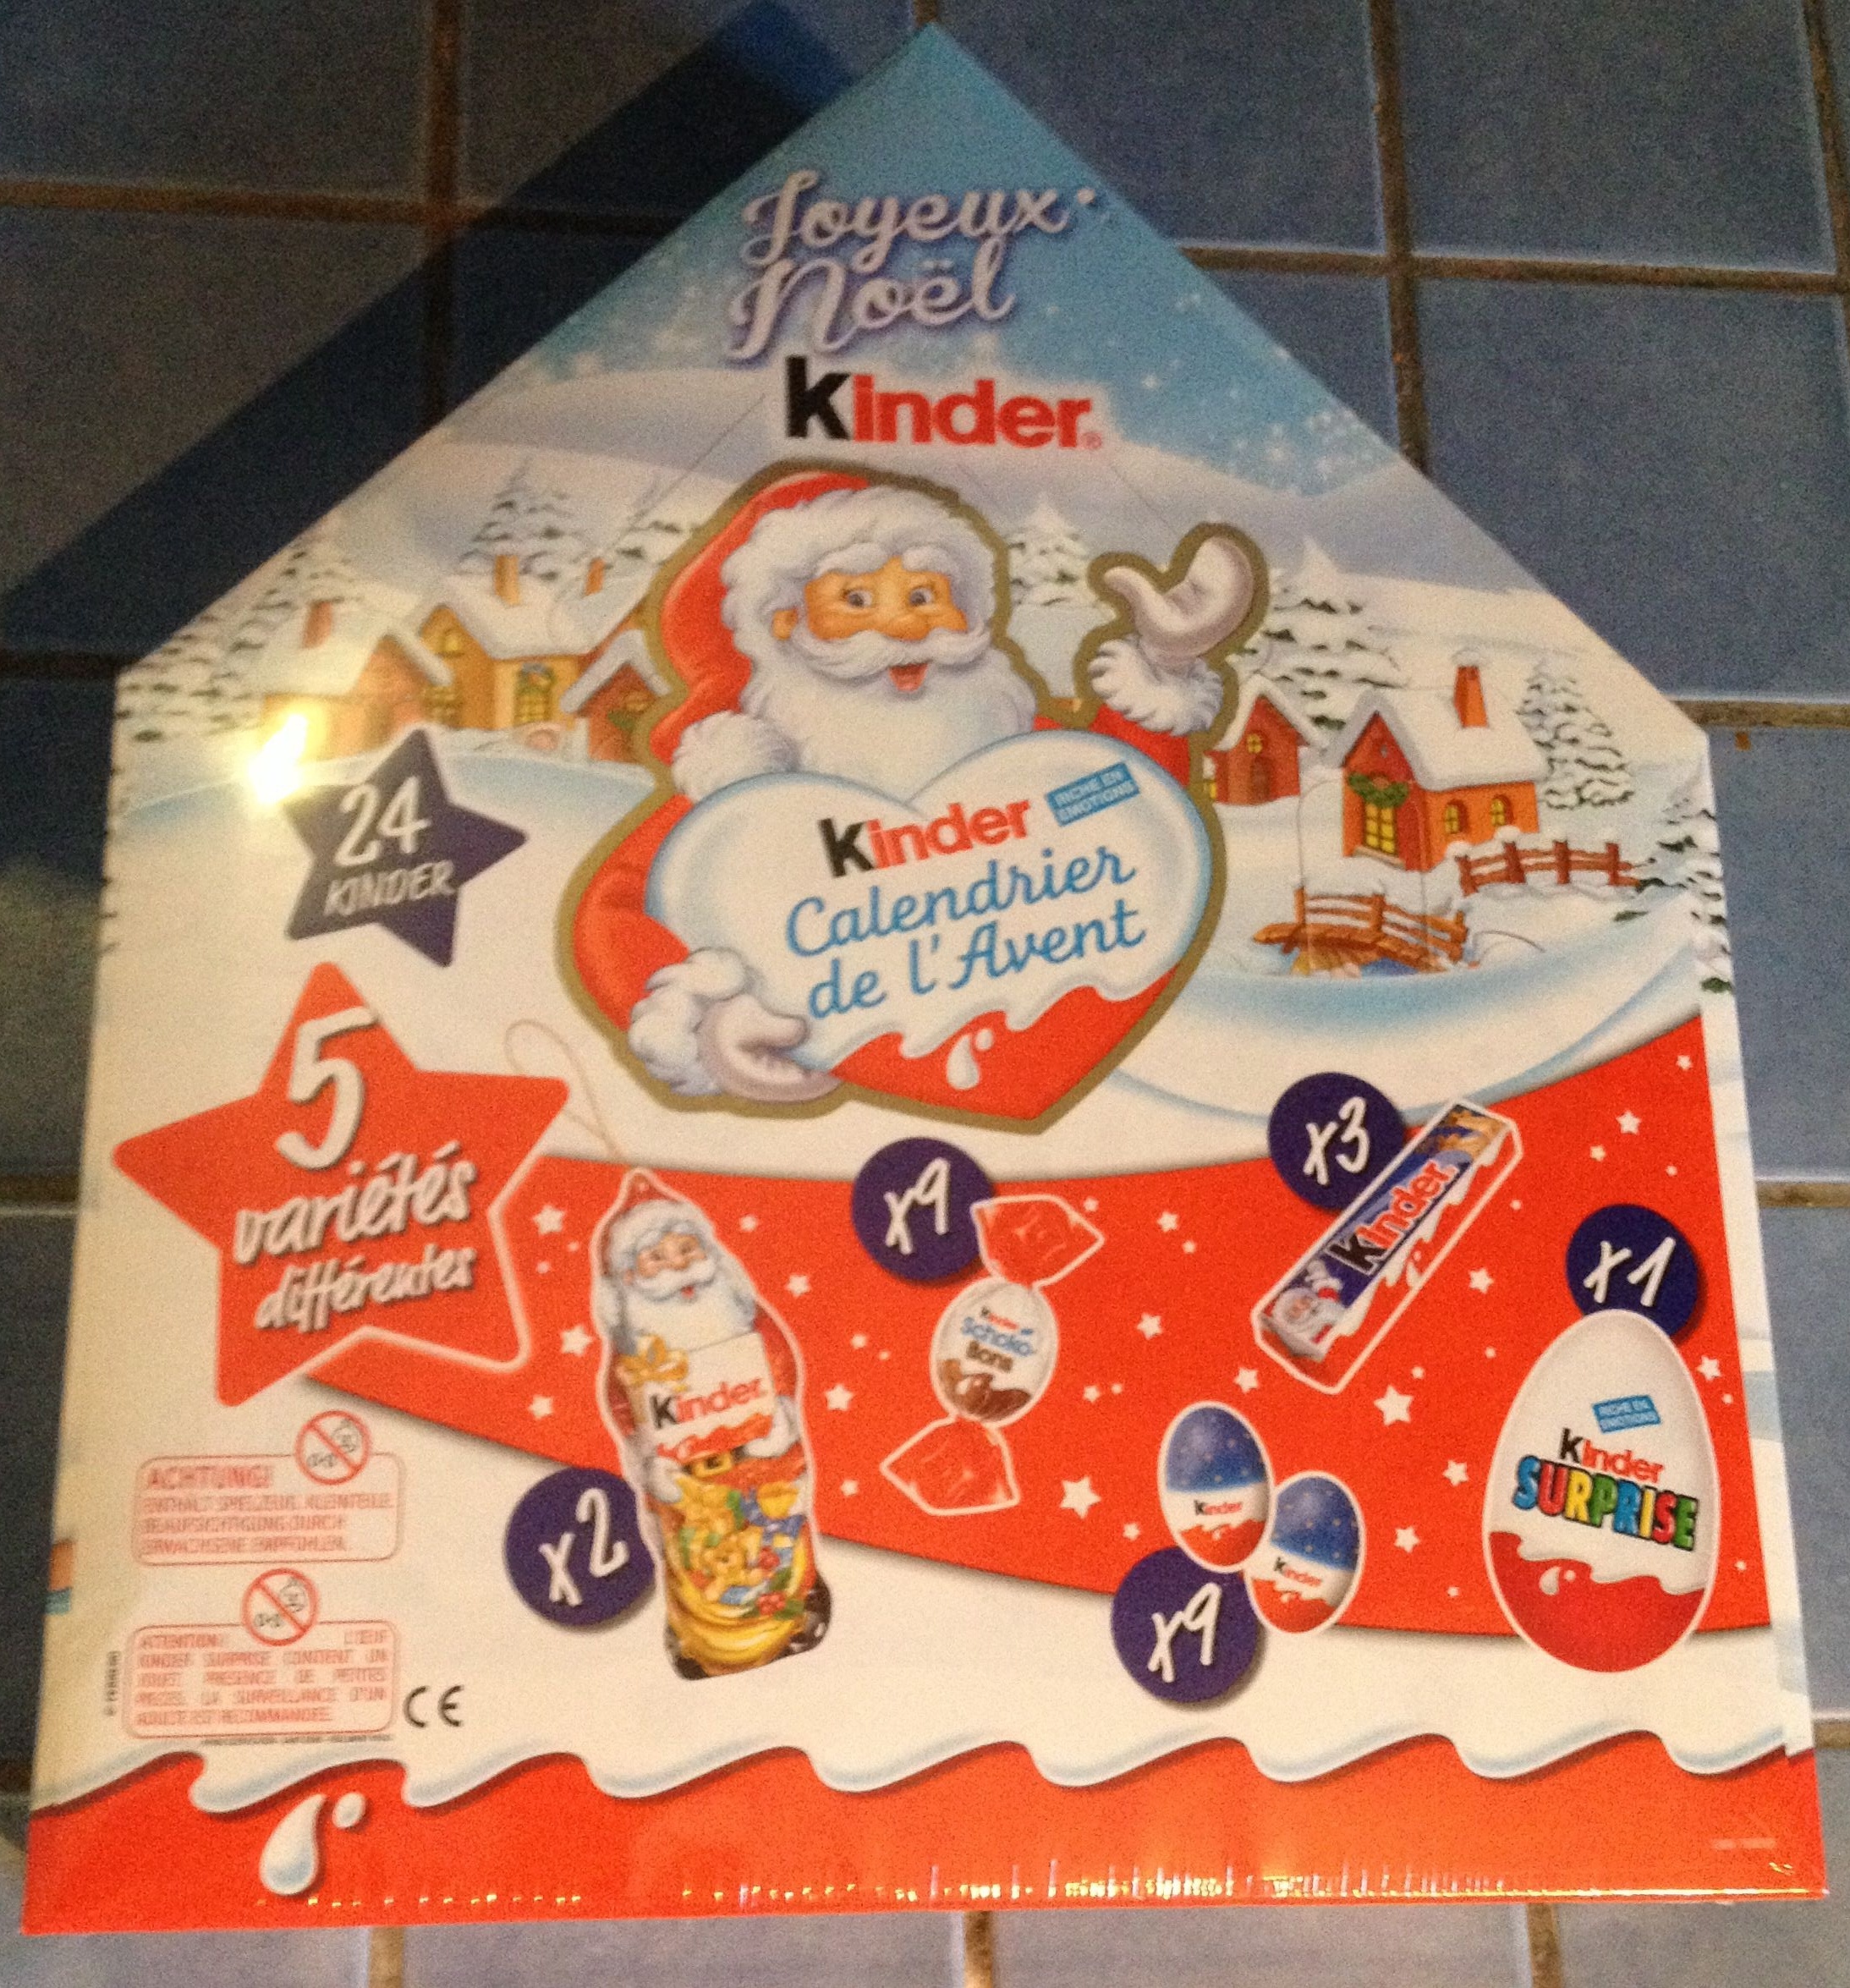 kinder - Product - fr